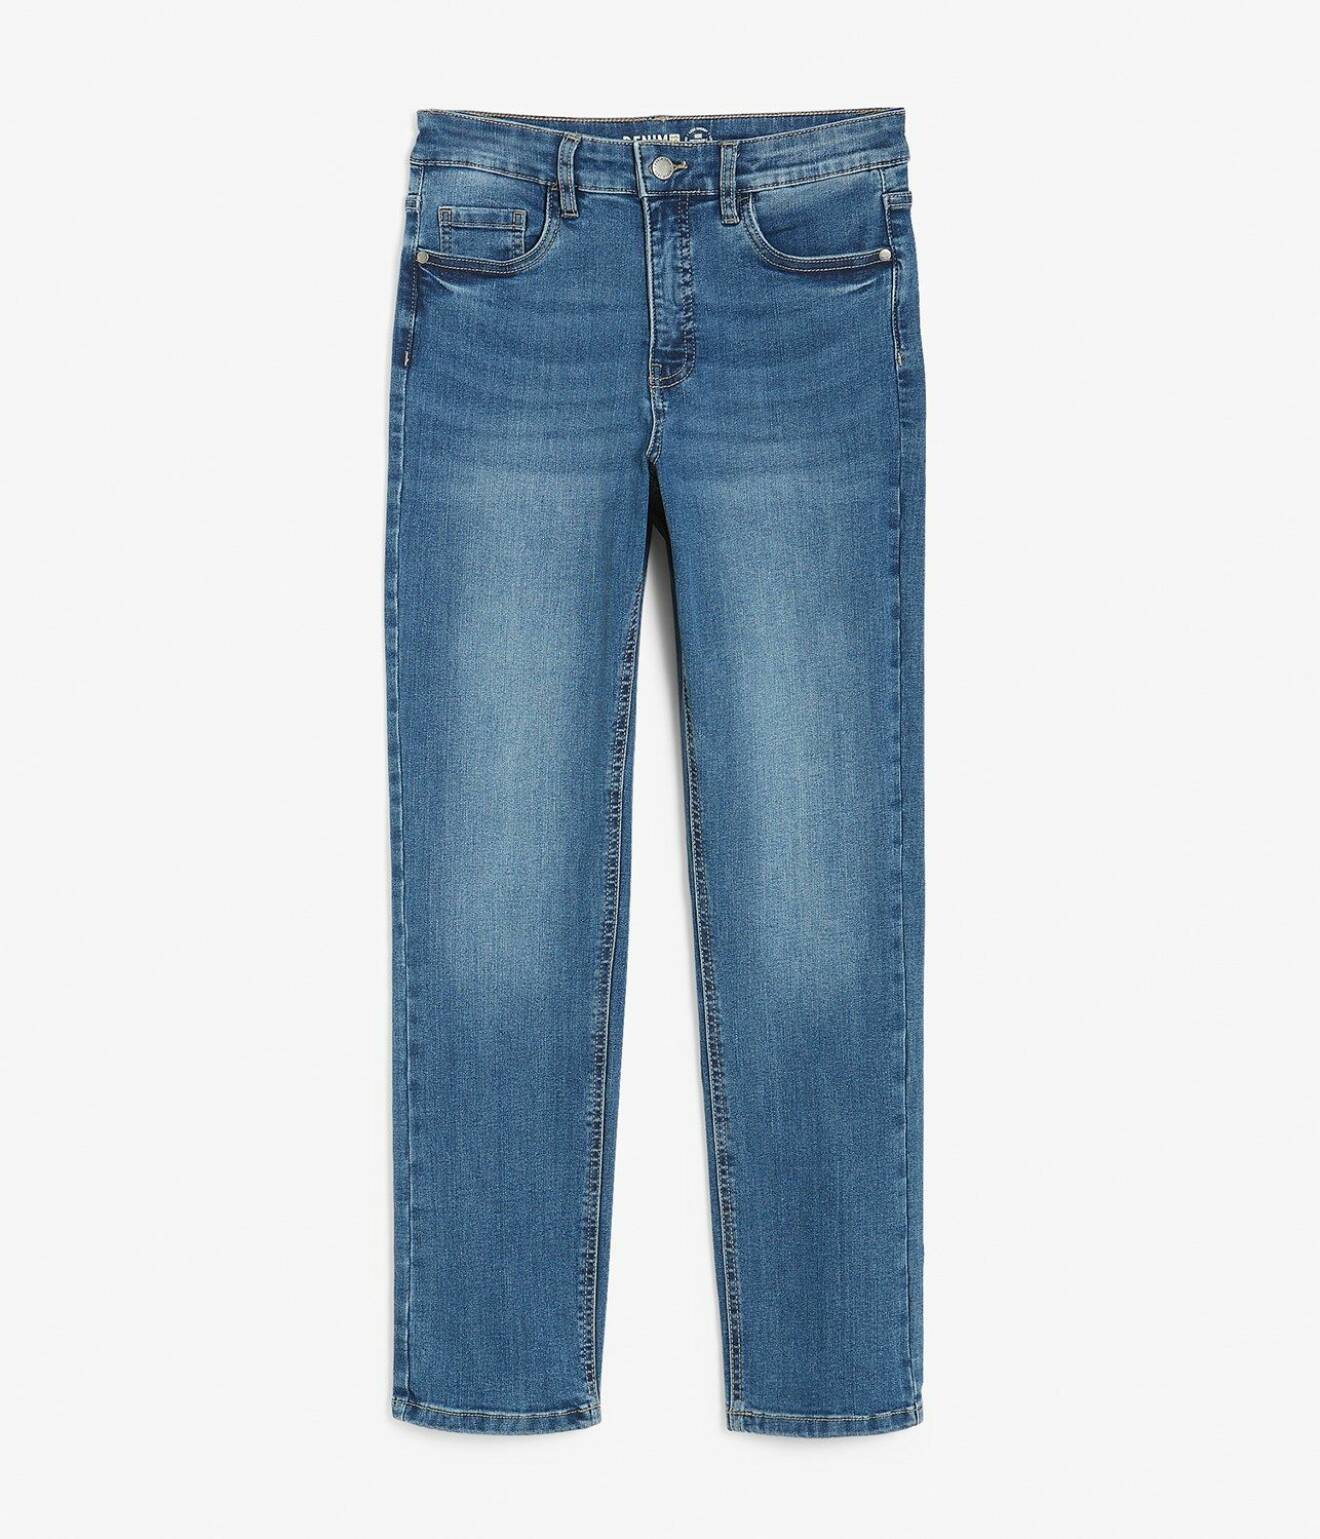 Blå jeans i croppad modell. Jeans från Kappahl.